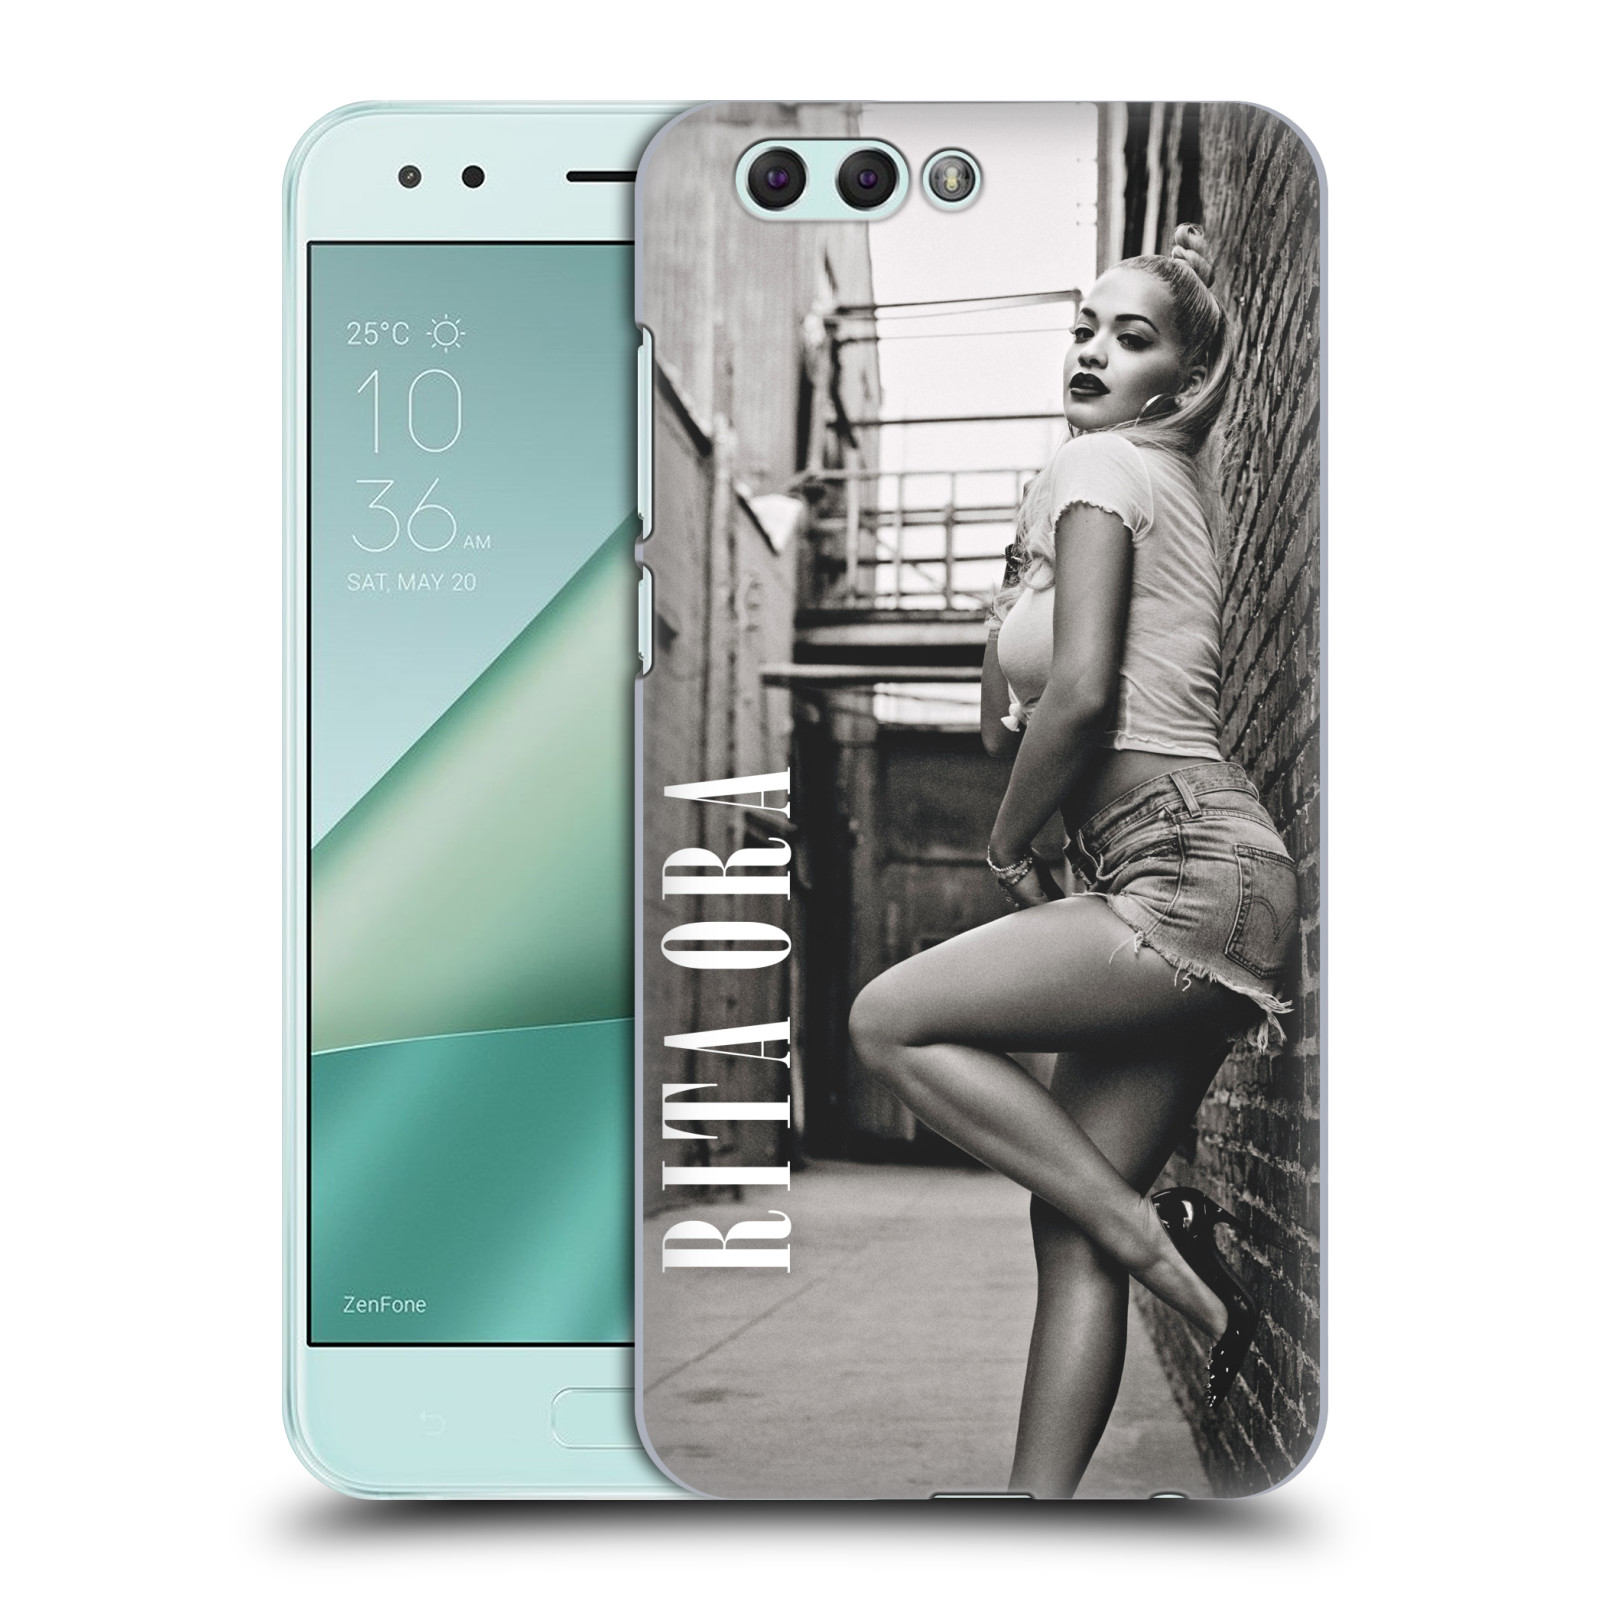 HEAD CASE plastový obal na mobil Asus Zenfone 4 ZE554KL zpěvačka Rita Ora foto černobílá